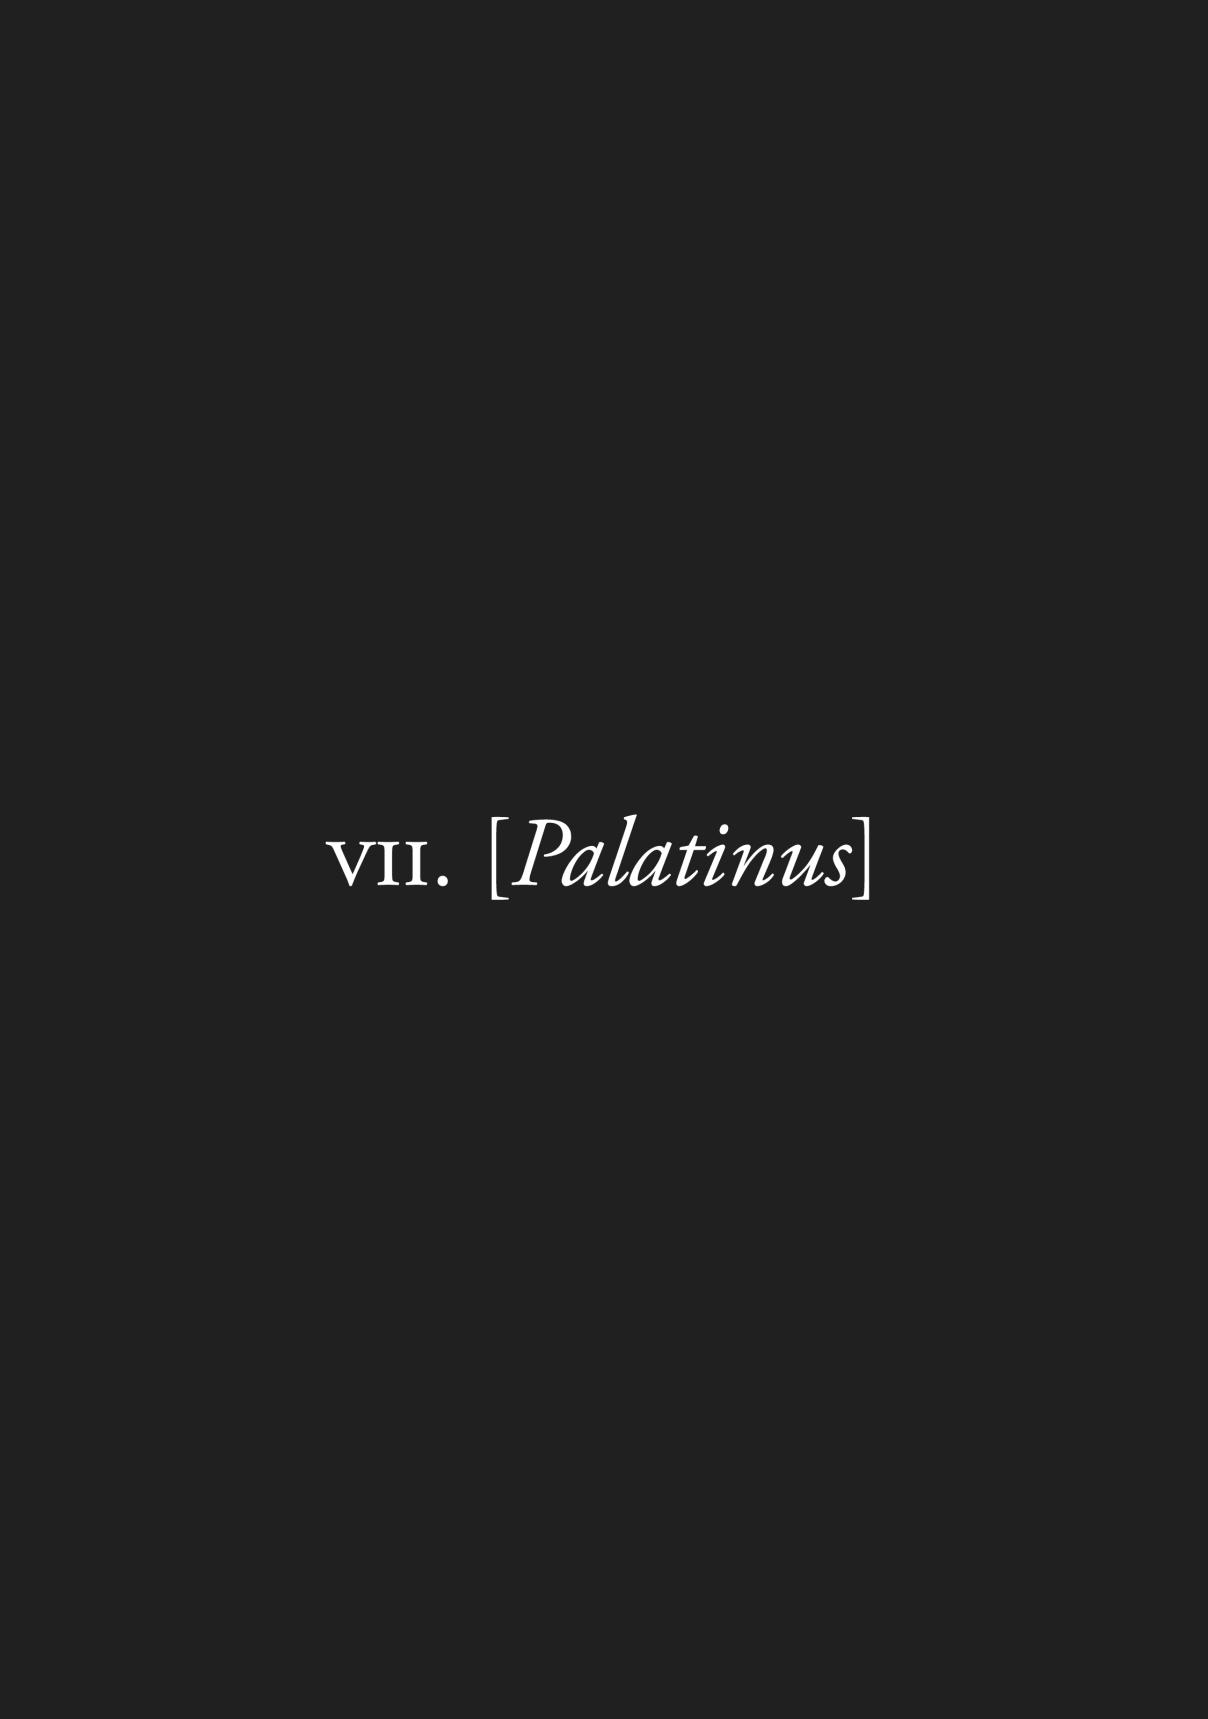 Plinivs Vol. 1 Ch. 7 Palatinus